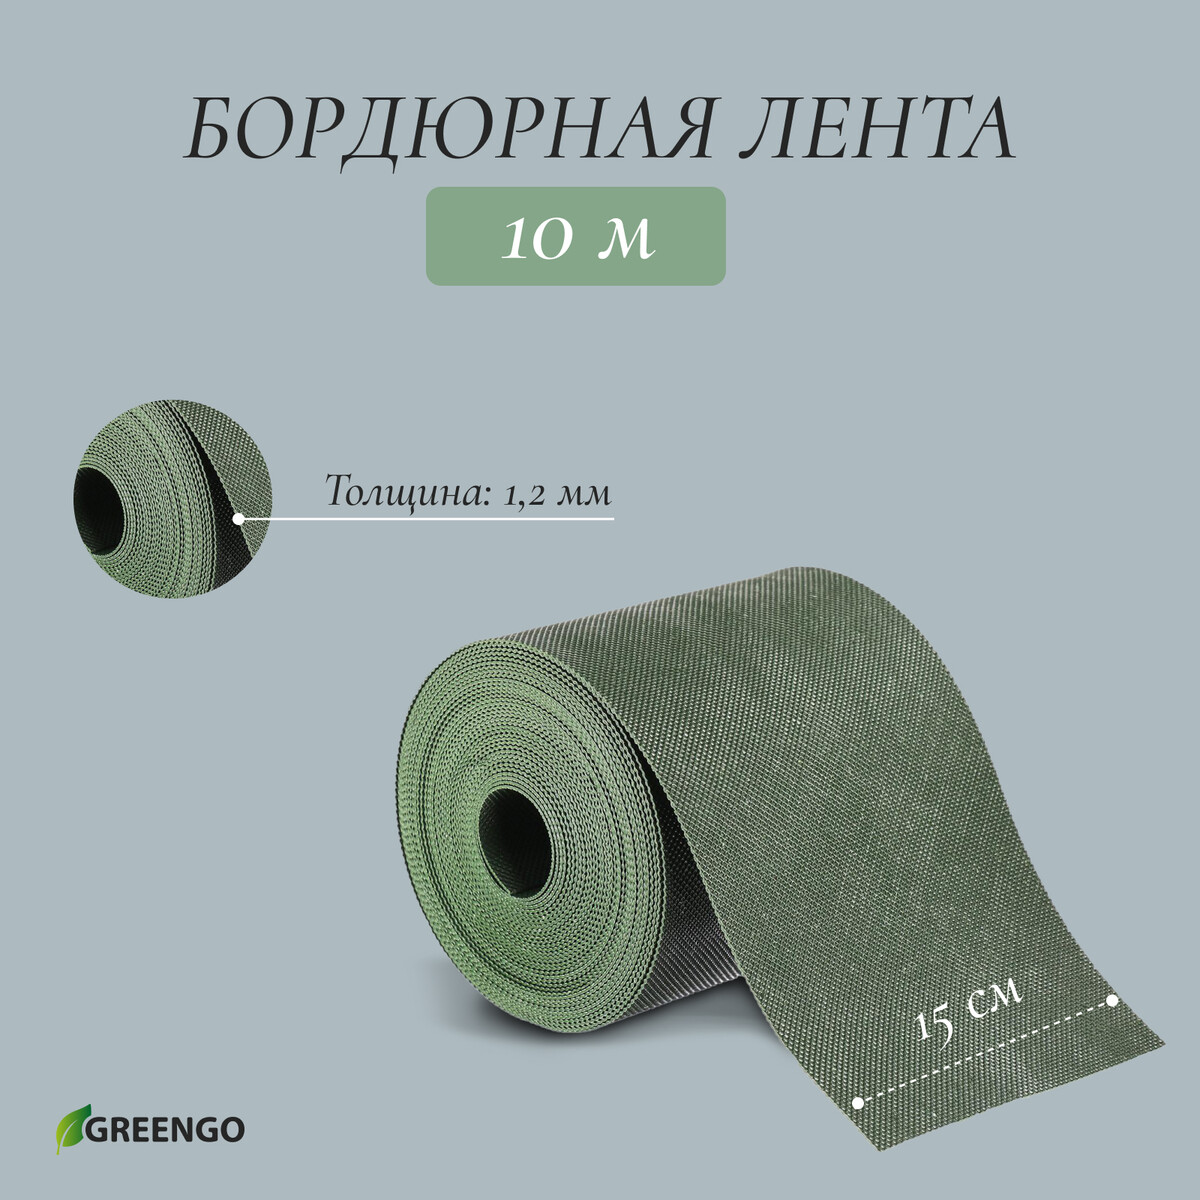 Лента бордюрная, 0.15 × 10 м, толщина 1.2 мм, пластиковая, зеленая, greengo лента бордюрная 0 15 × 9 м толщина 1 2 мм пластиковая фигурная коричневая greengo